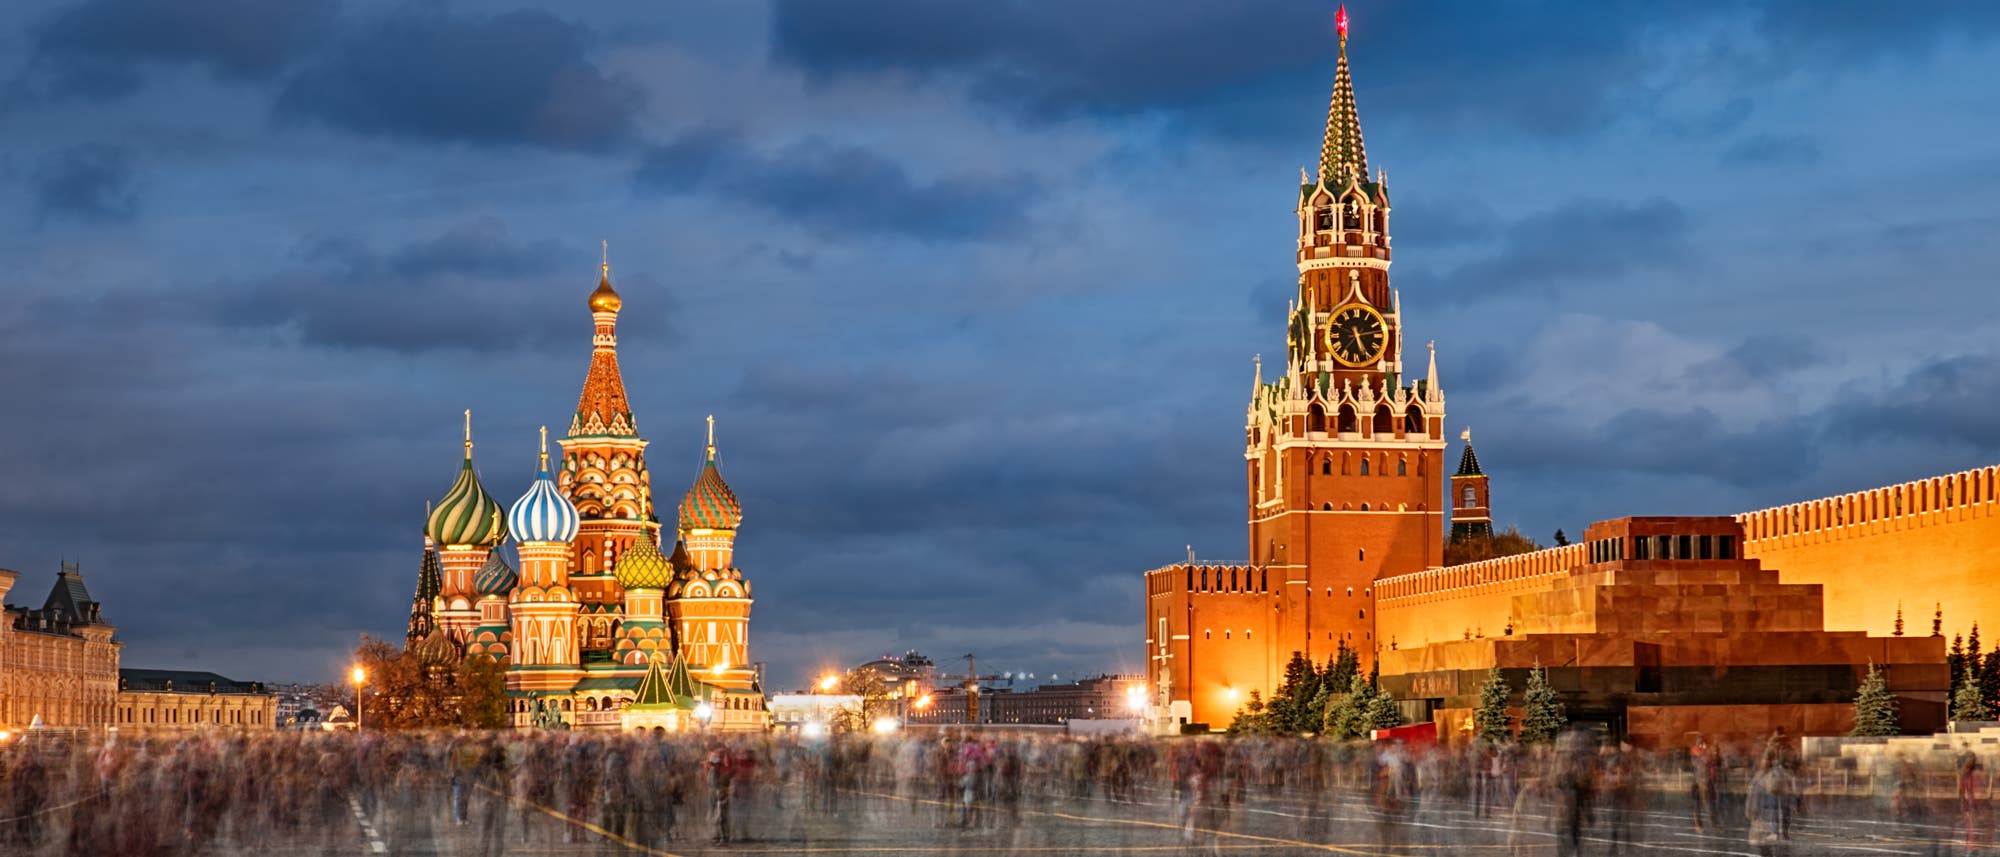 Die Basilius-Kathedrale und der Kreml auf dem Roten Platz in Moskau, aufgenommen am Abend.